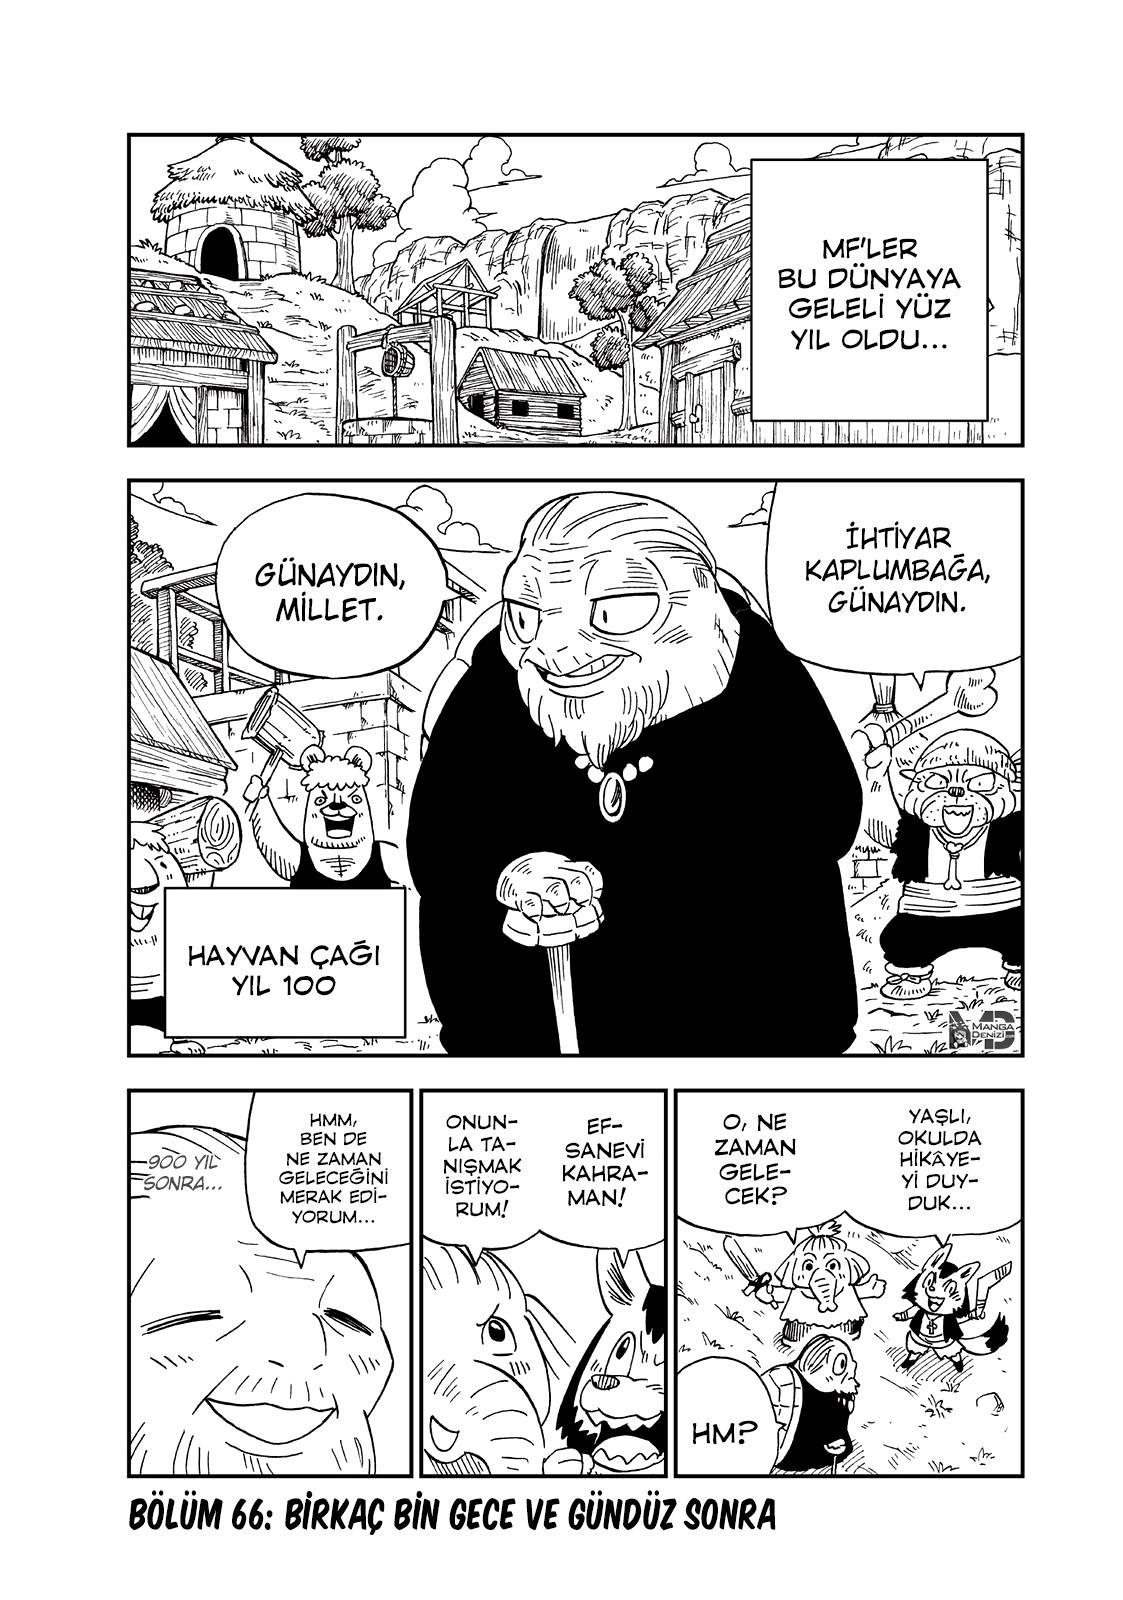 Fairy Tail: Happy's Great Adventure mangasının 66 bölümünün 2. sayfasını okuyorsunuz.